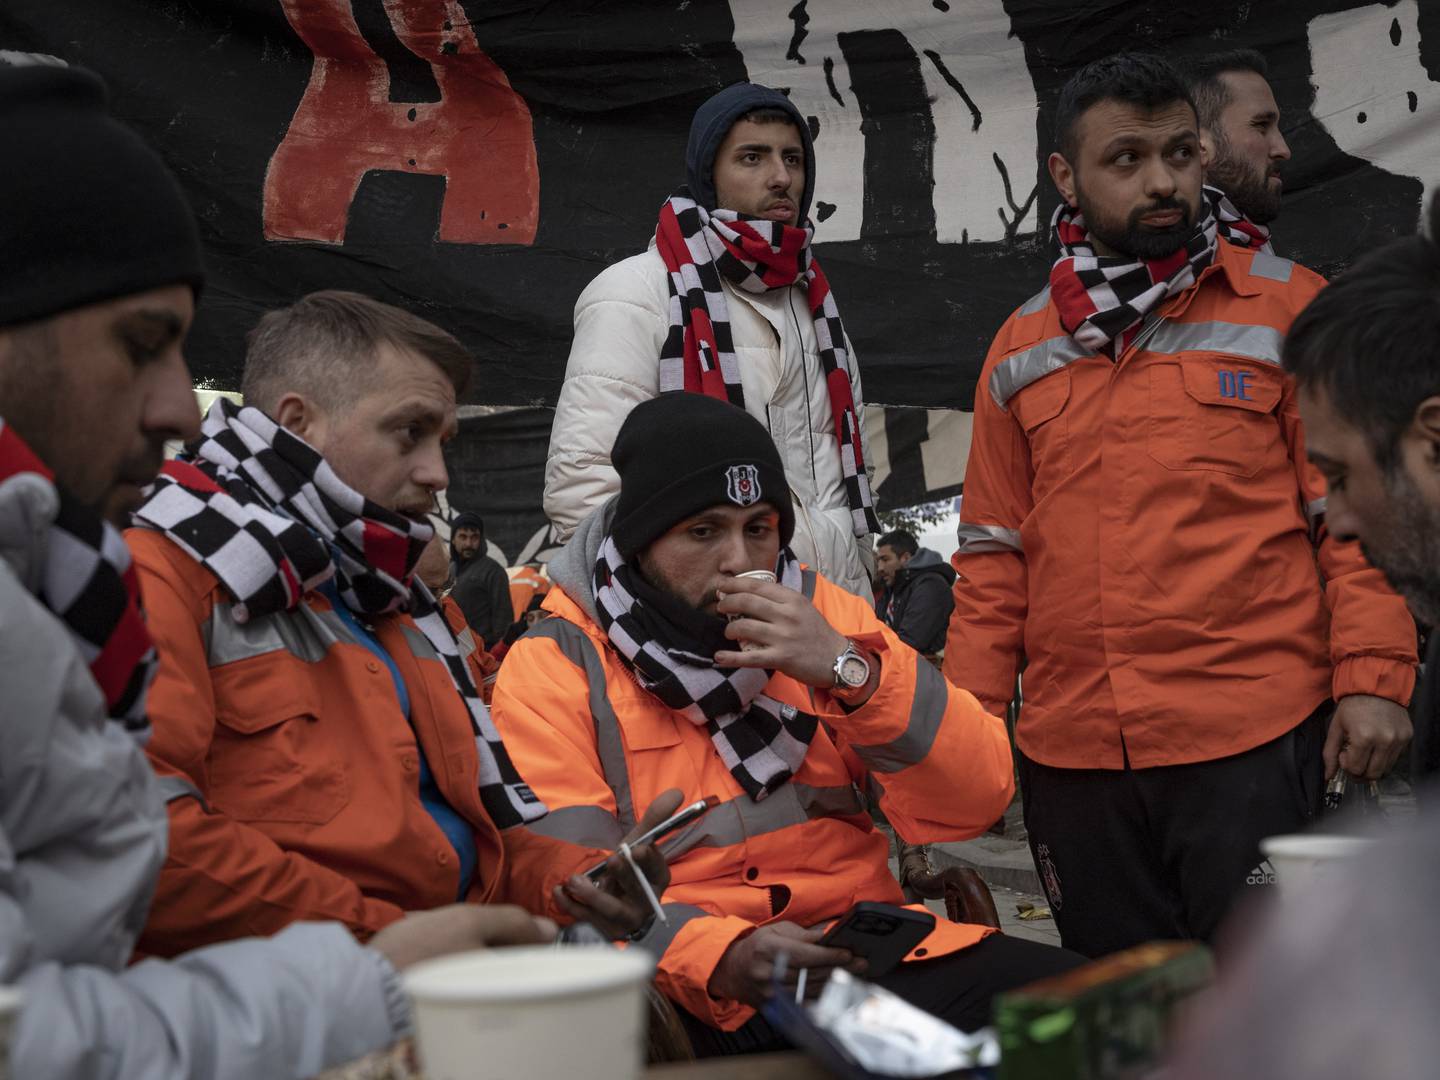 Des supporters du Besiktas Football Club dirigent un camp pour les personnes déplacées par le tremblement de terre à Antakya.  Matt Kynaston.